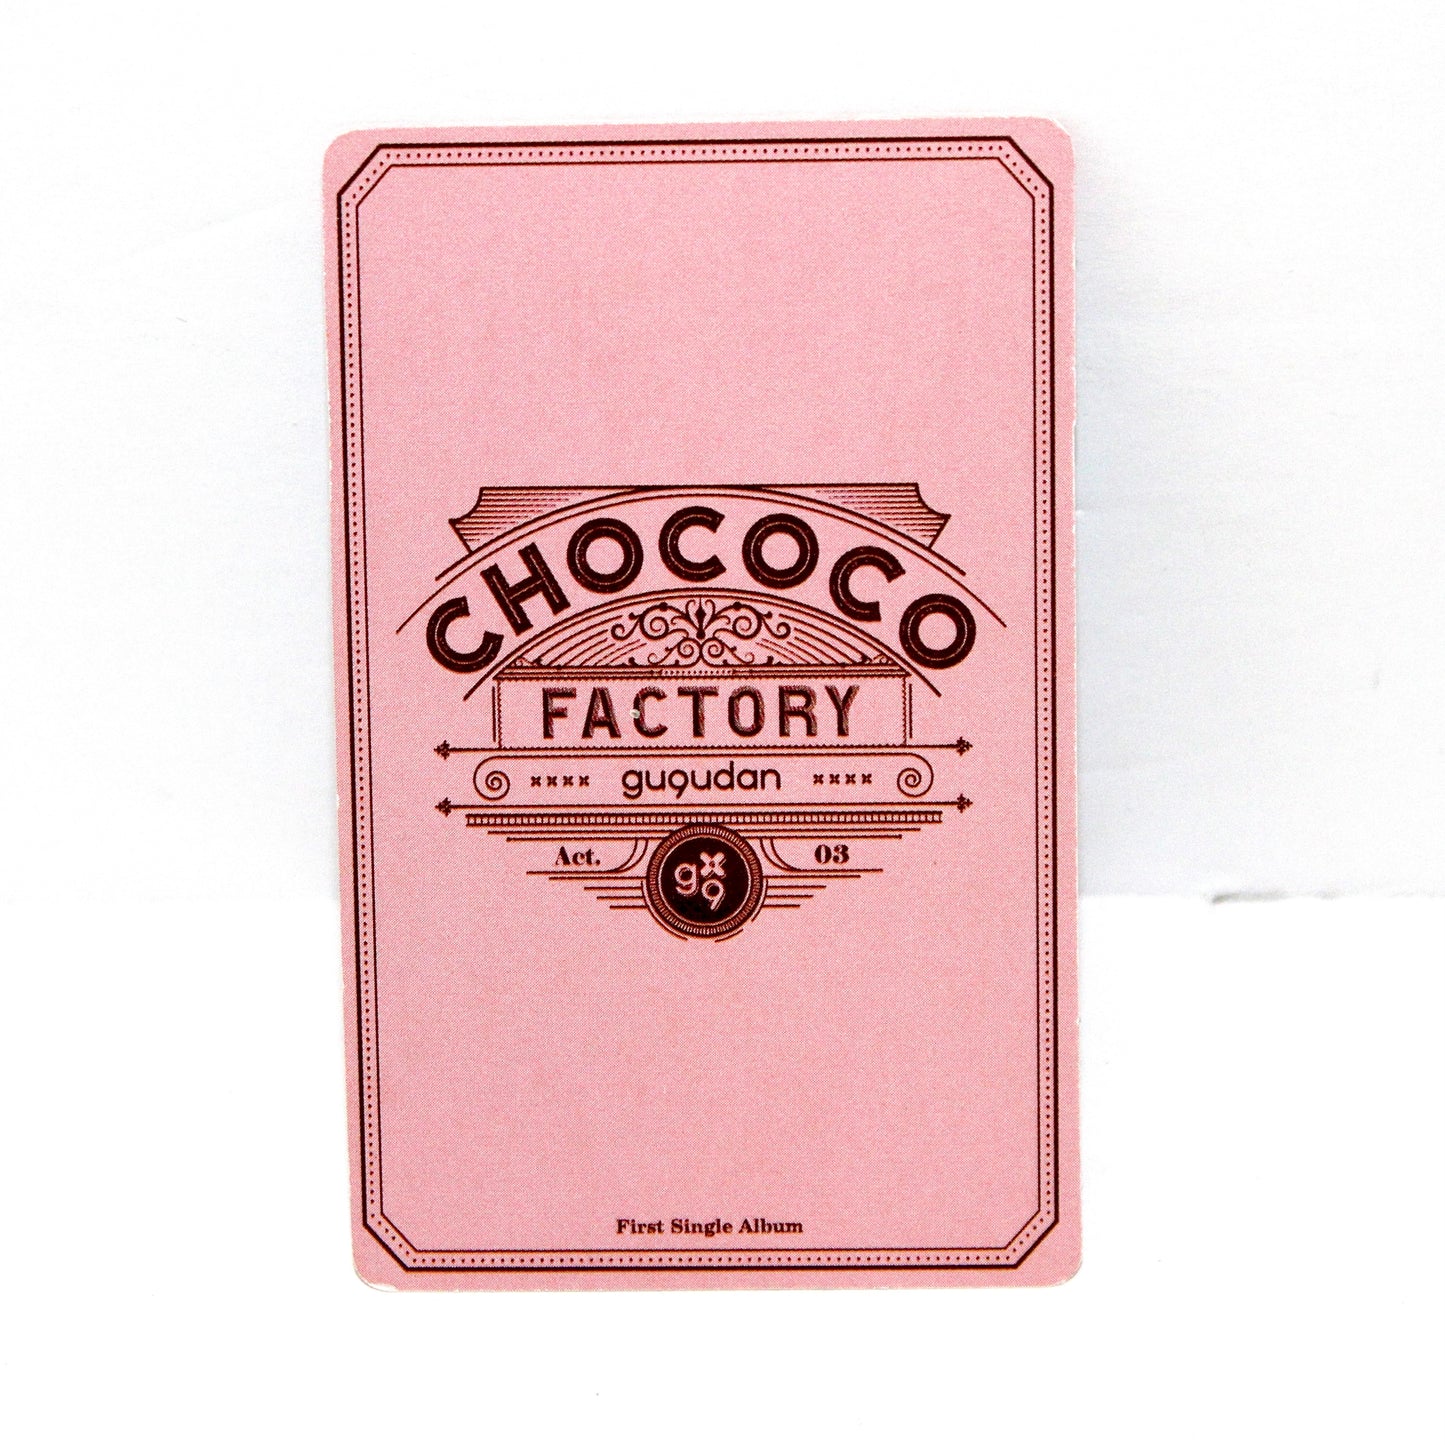 GUGUDAN 1st Single Album: Chococo Factory | Inclusions